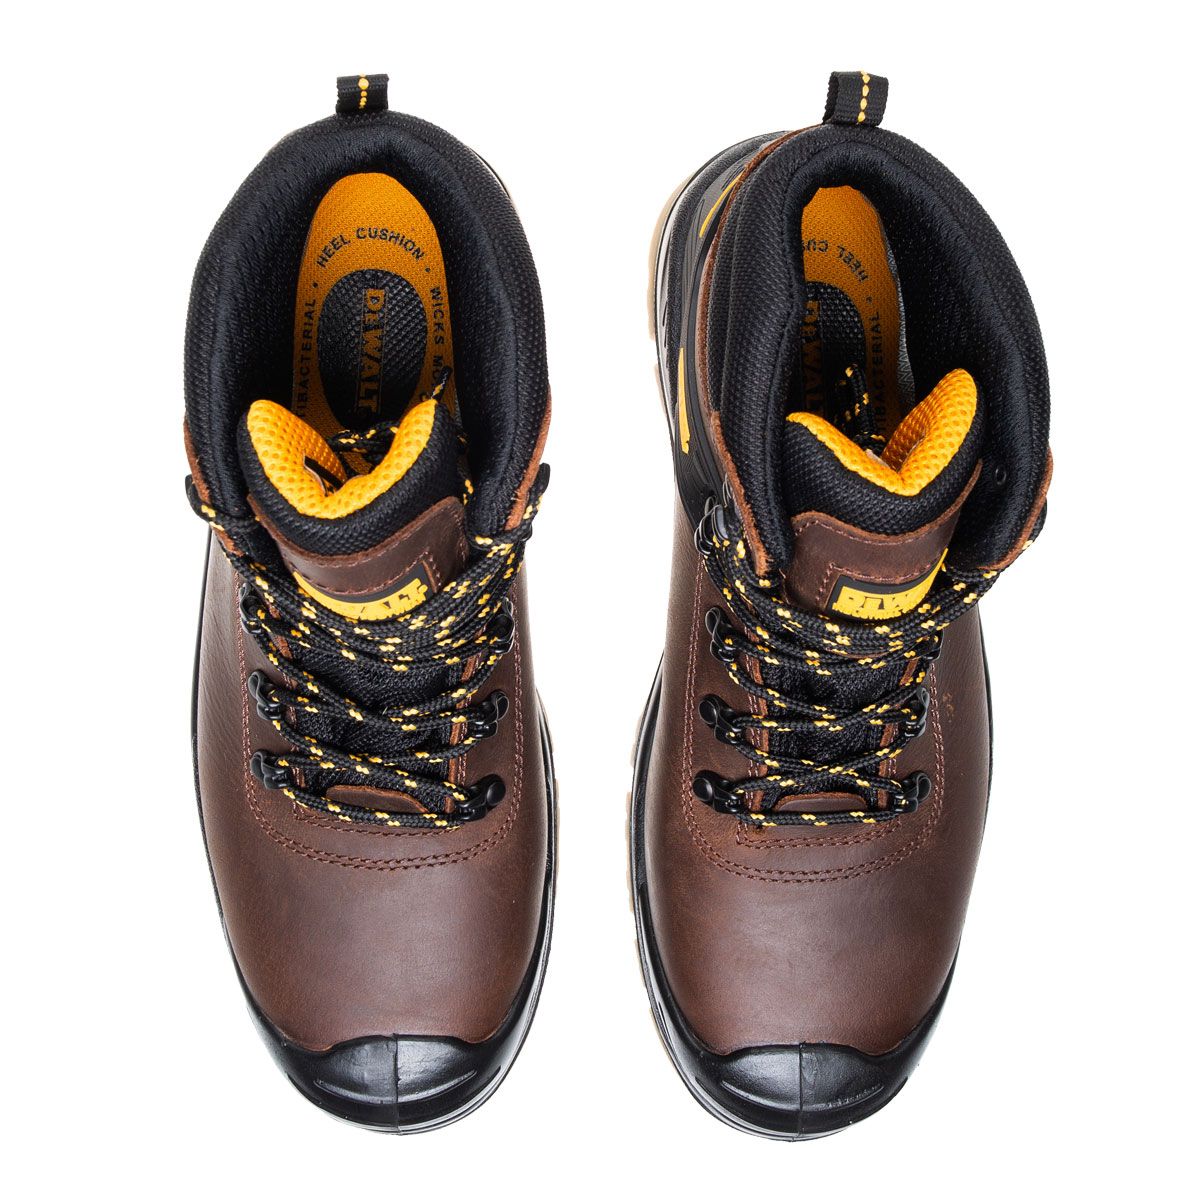 DeWalt Newark Men's Brown Safety boots, Size 8